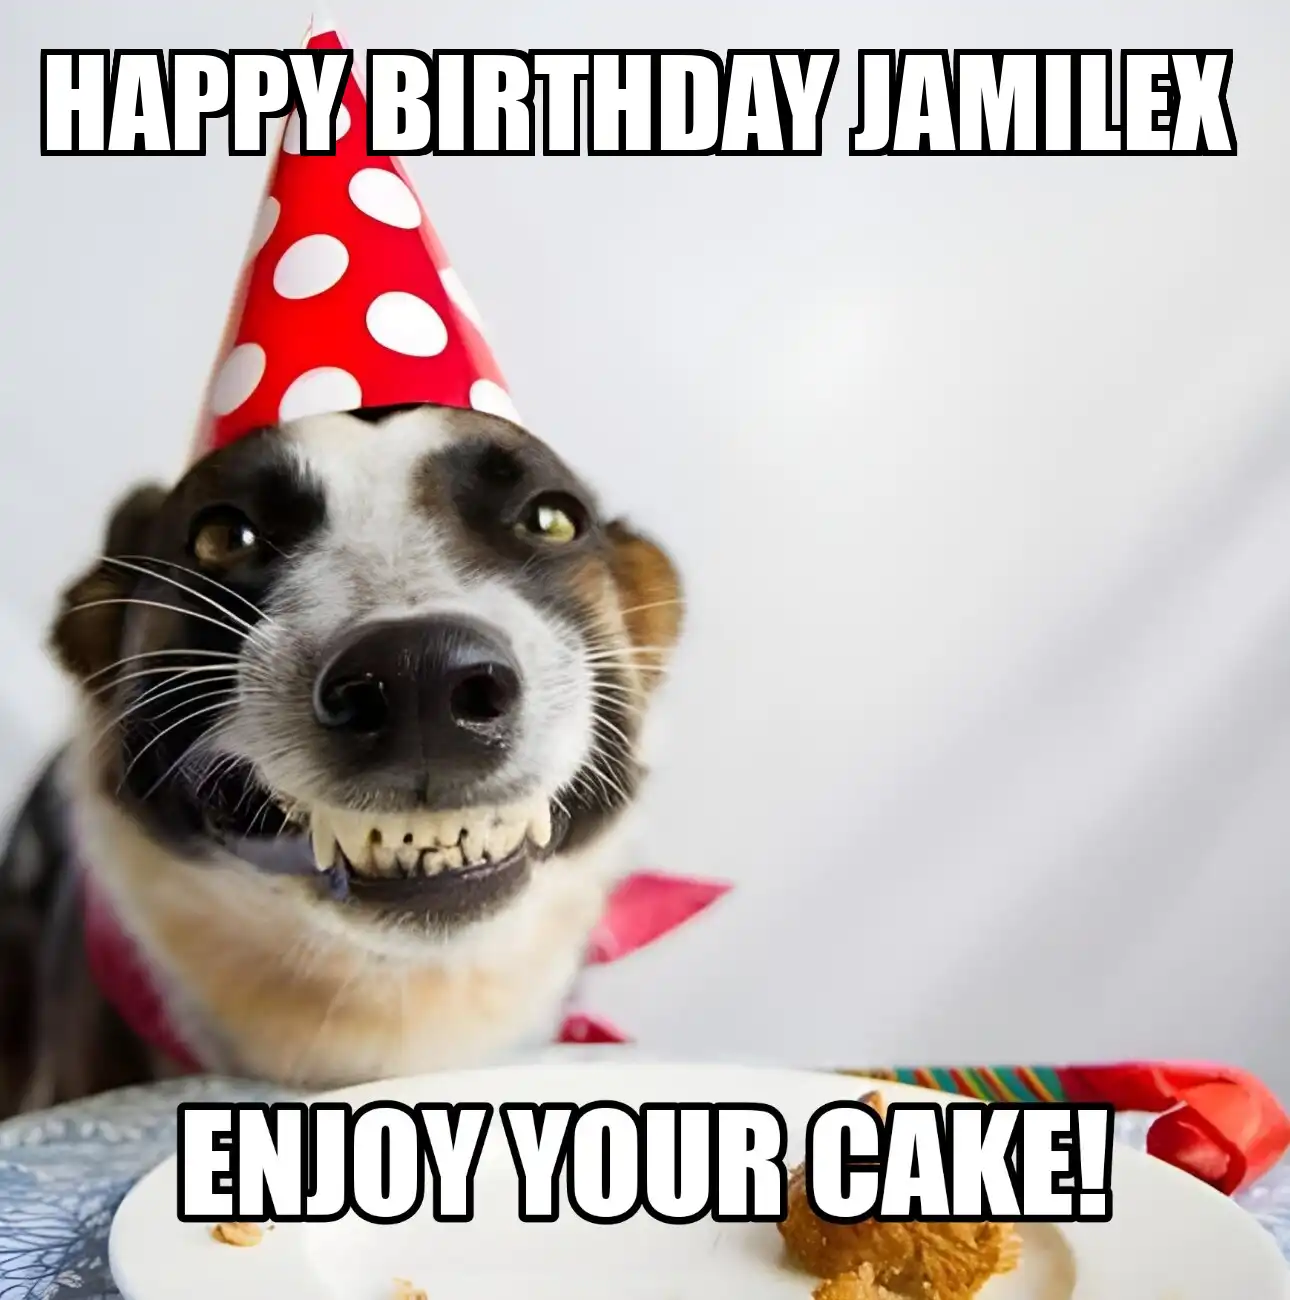 Happy Birthday Jamilex Enjoy Your Cake Dog Meme